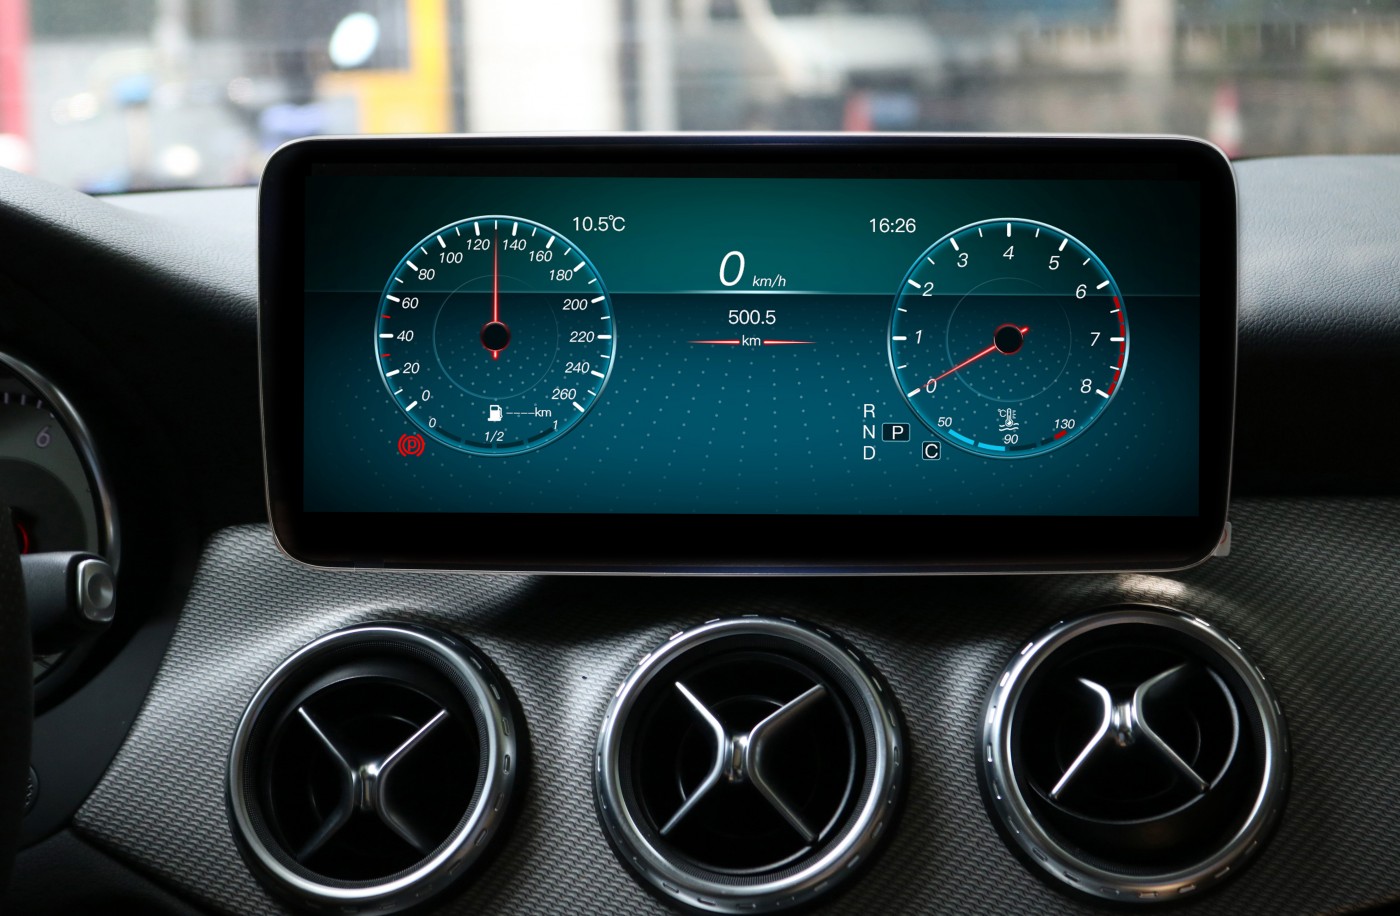 Штатная магнитола для Mercedes-Benz CLA 2013-2016 - Carmedia XN-M1001 на Android 10, 8-ЯДЕР Snapdragon 625, 4ГБ-64ГБ и встроенным 4G модемом